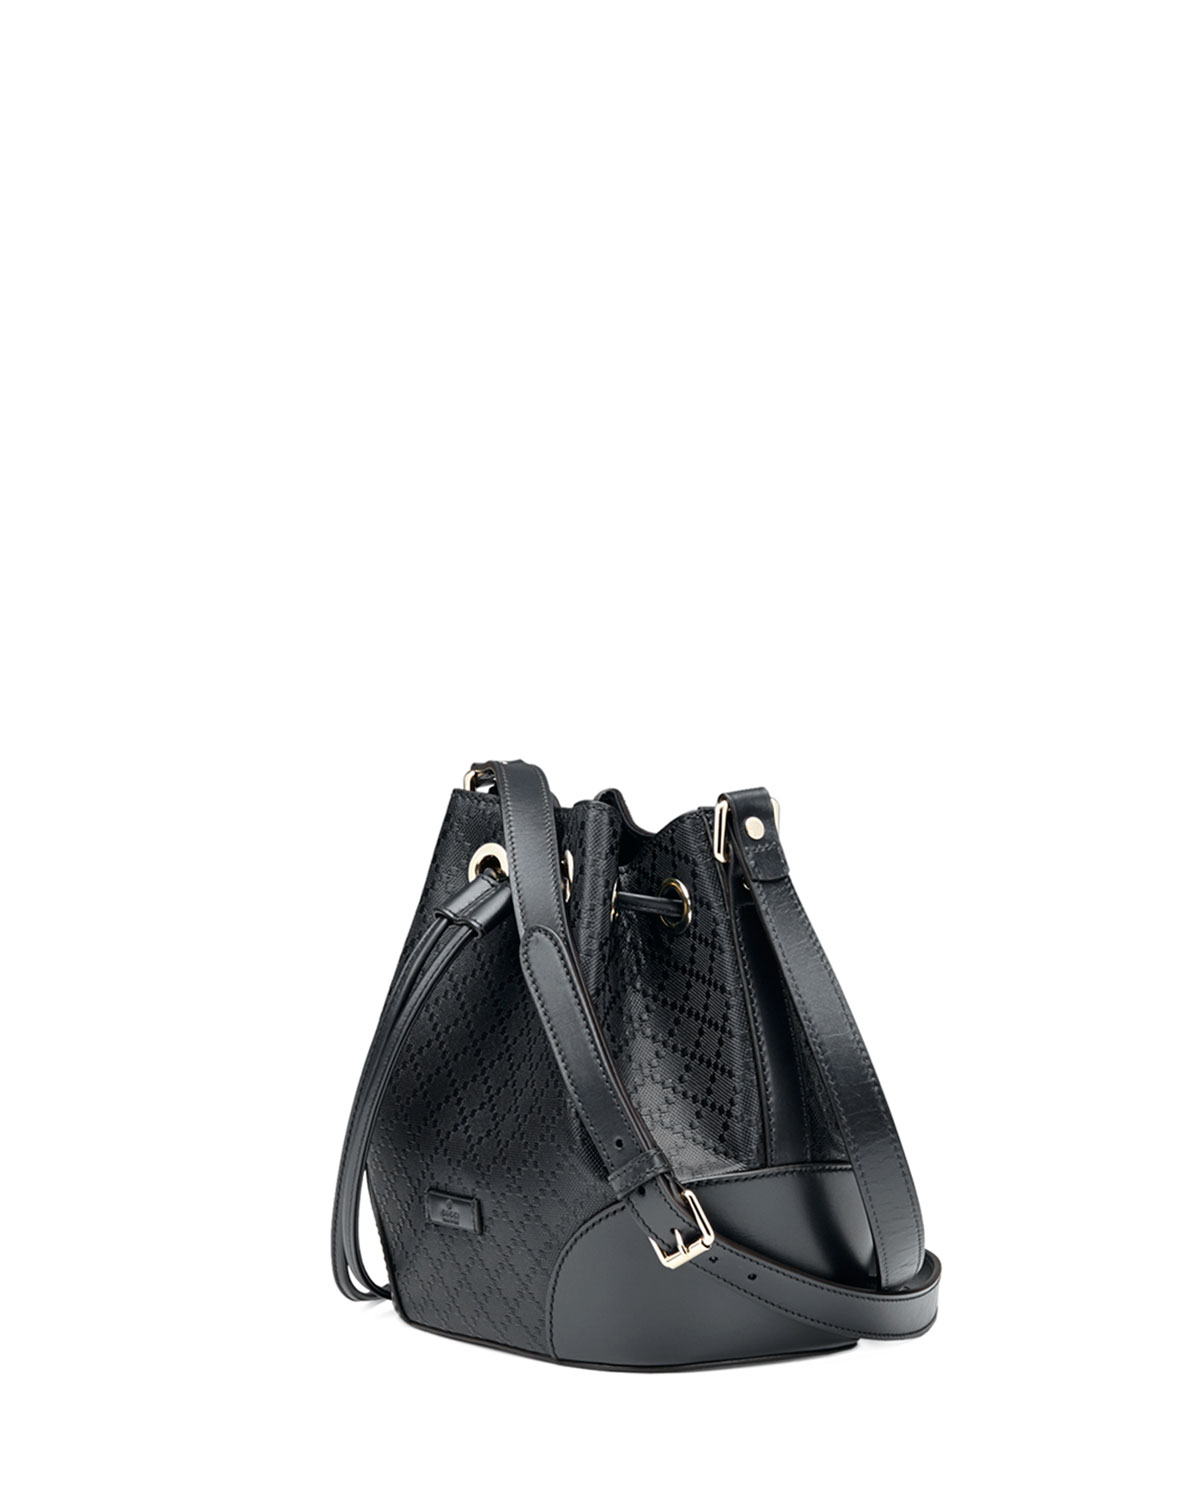 Lyst - Gucci Bright Diamante Small Bucket Bag in Black